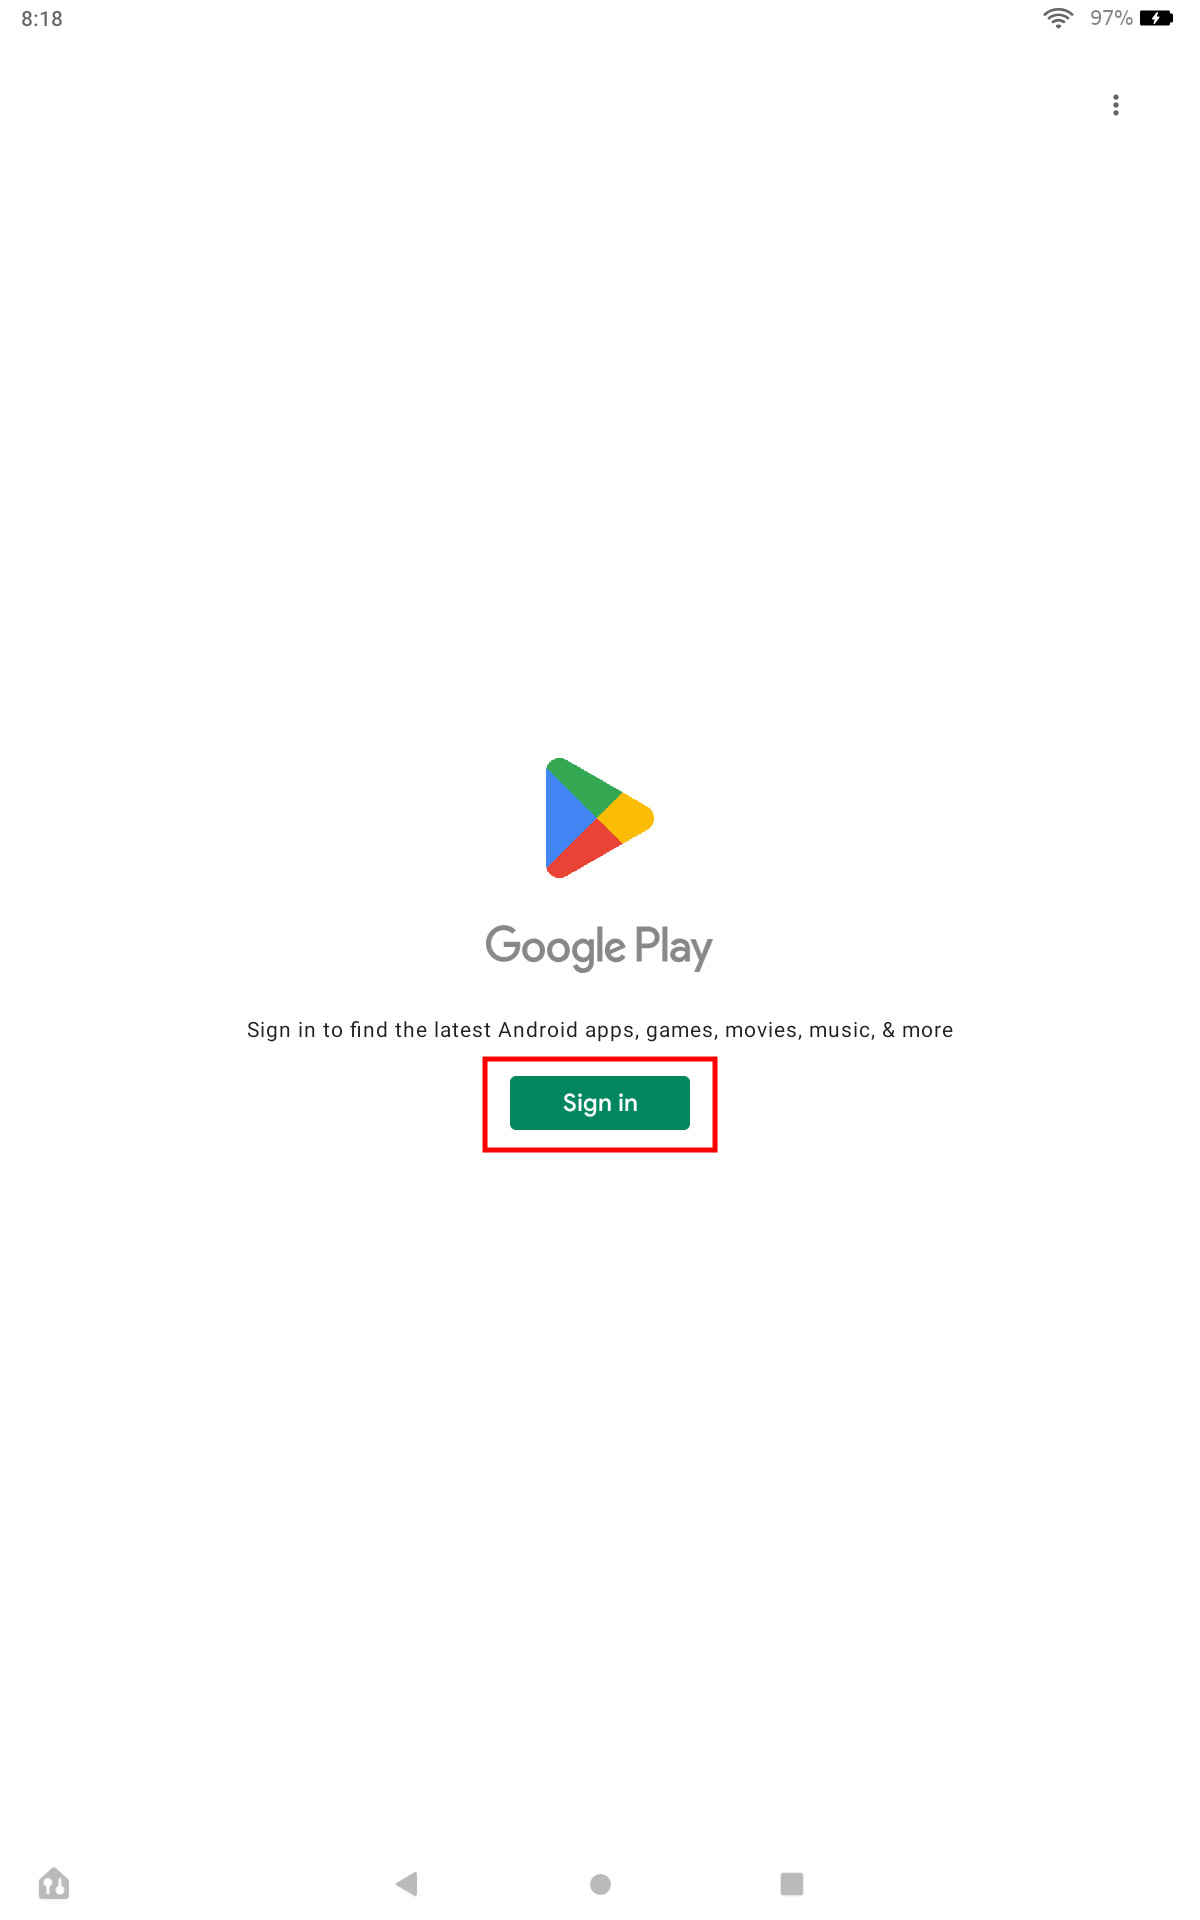 Fairo.pk – Apps on Google Play